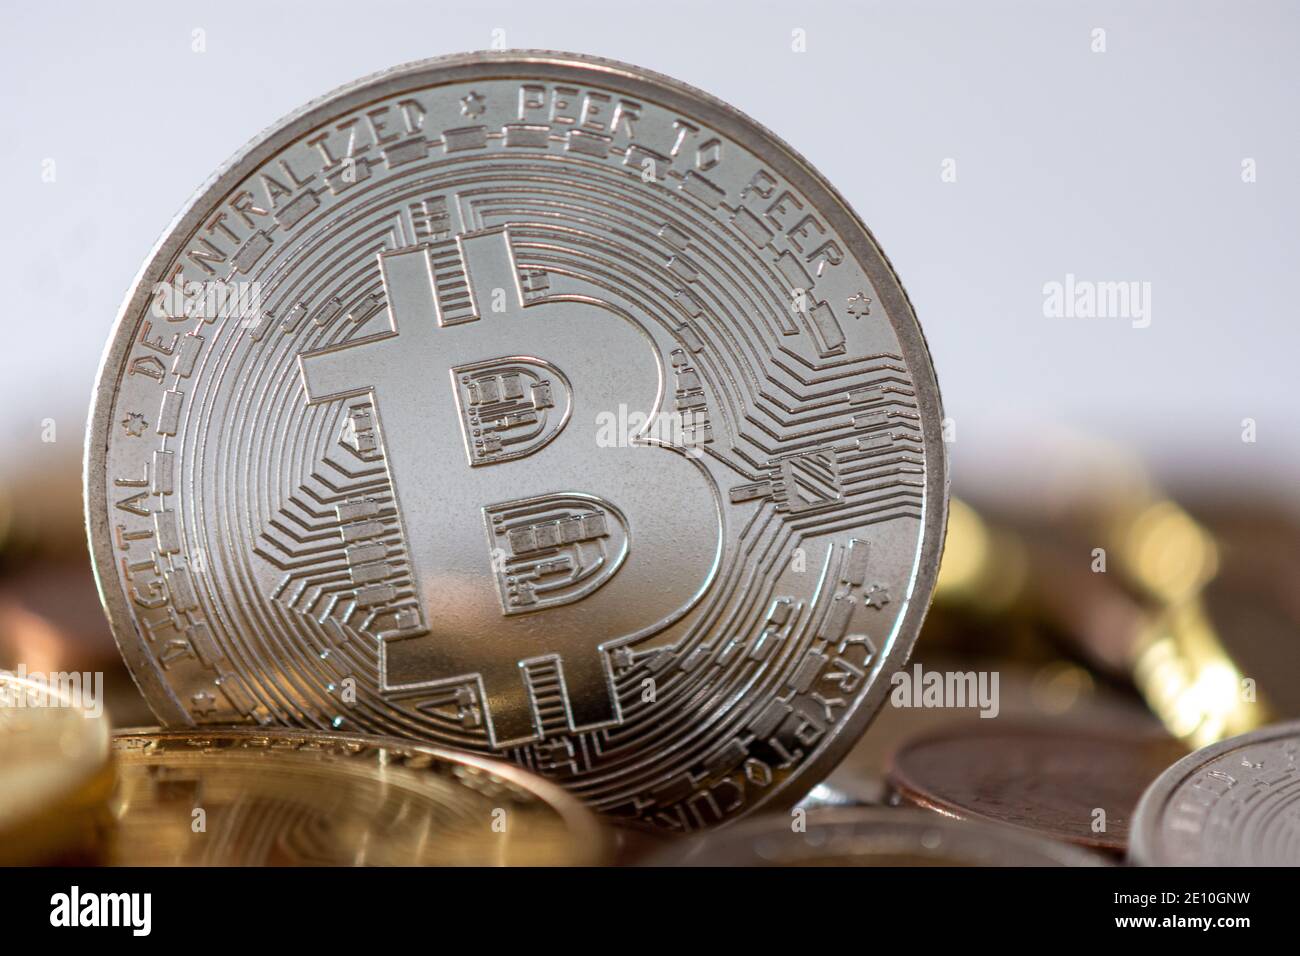 Un bitcoin d'argent se tenant parmi de nombreuses pièces floues. Le Bitcoin est une crypto-monnaie, une monnaie numérique décentralisée sans banque centrale Banque D'Images